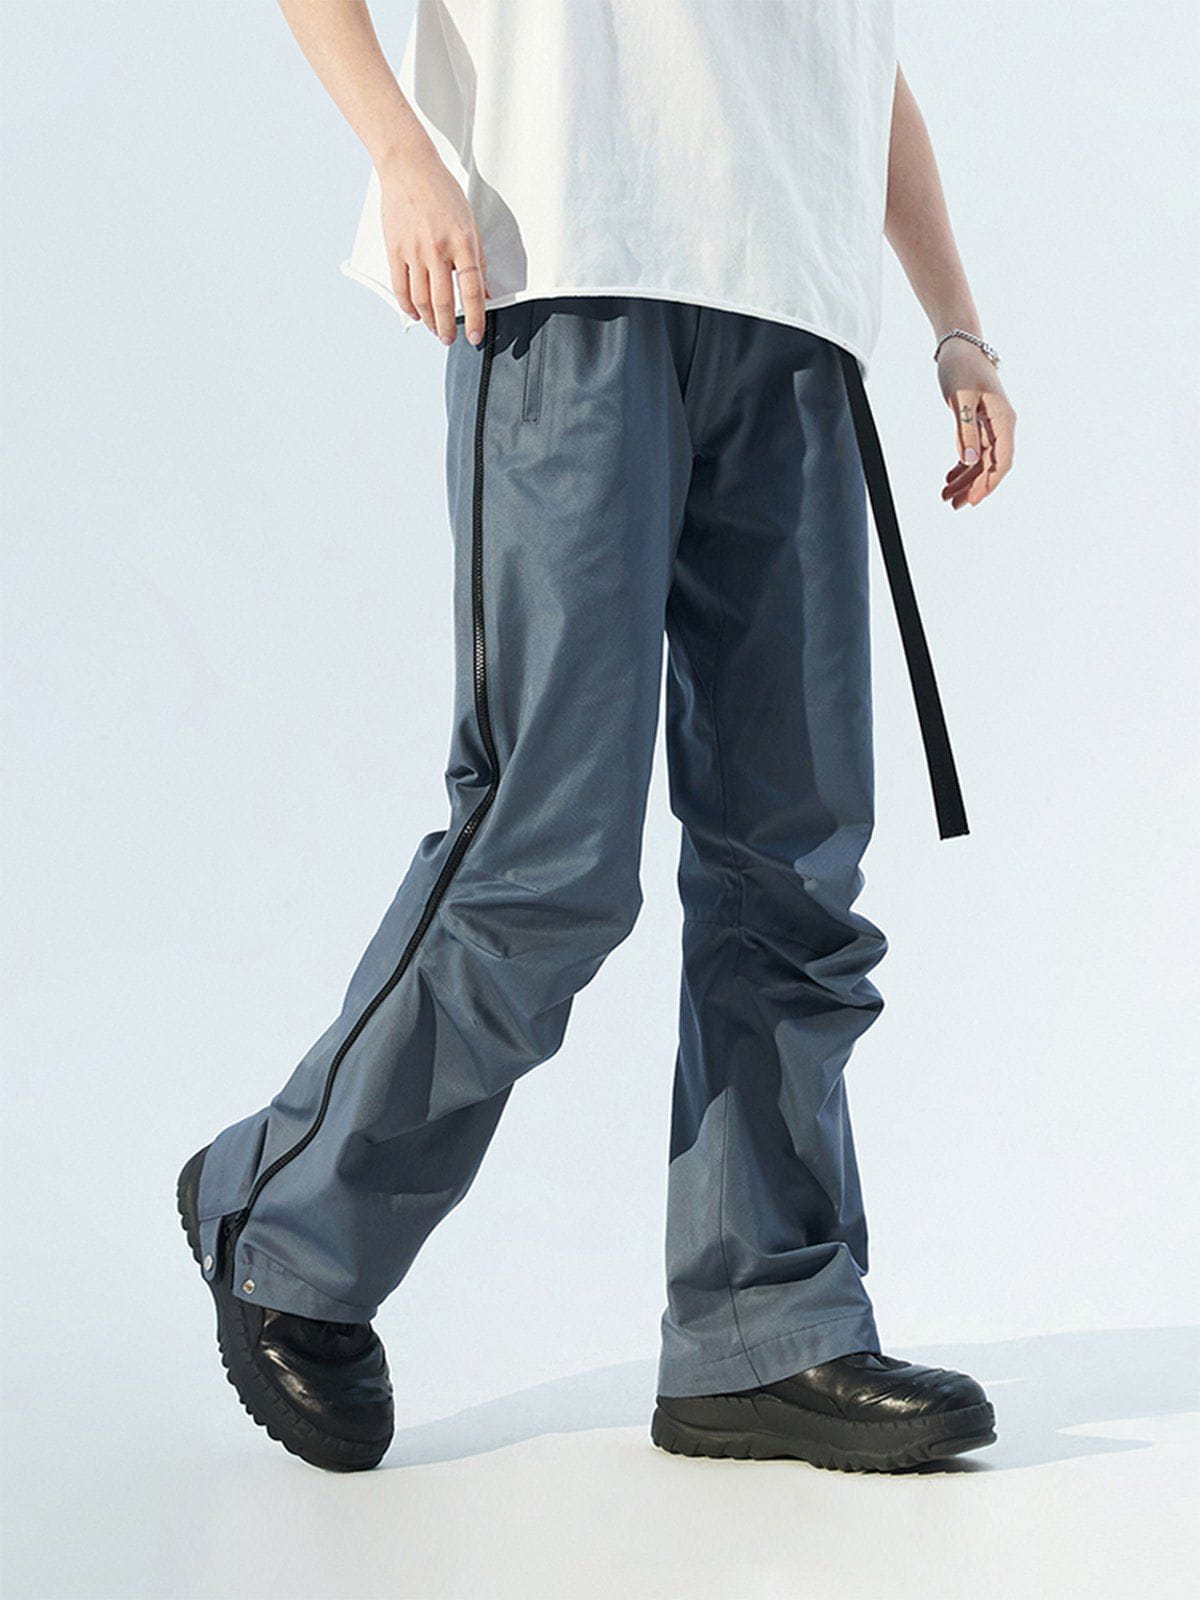 Majesda® - Side Zip Pleated Webbing Pants outfit ideas streetwear fashion